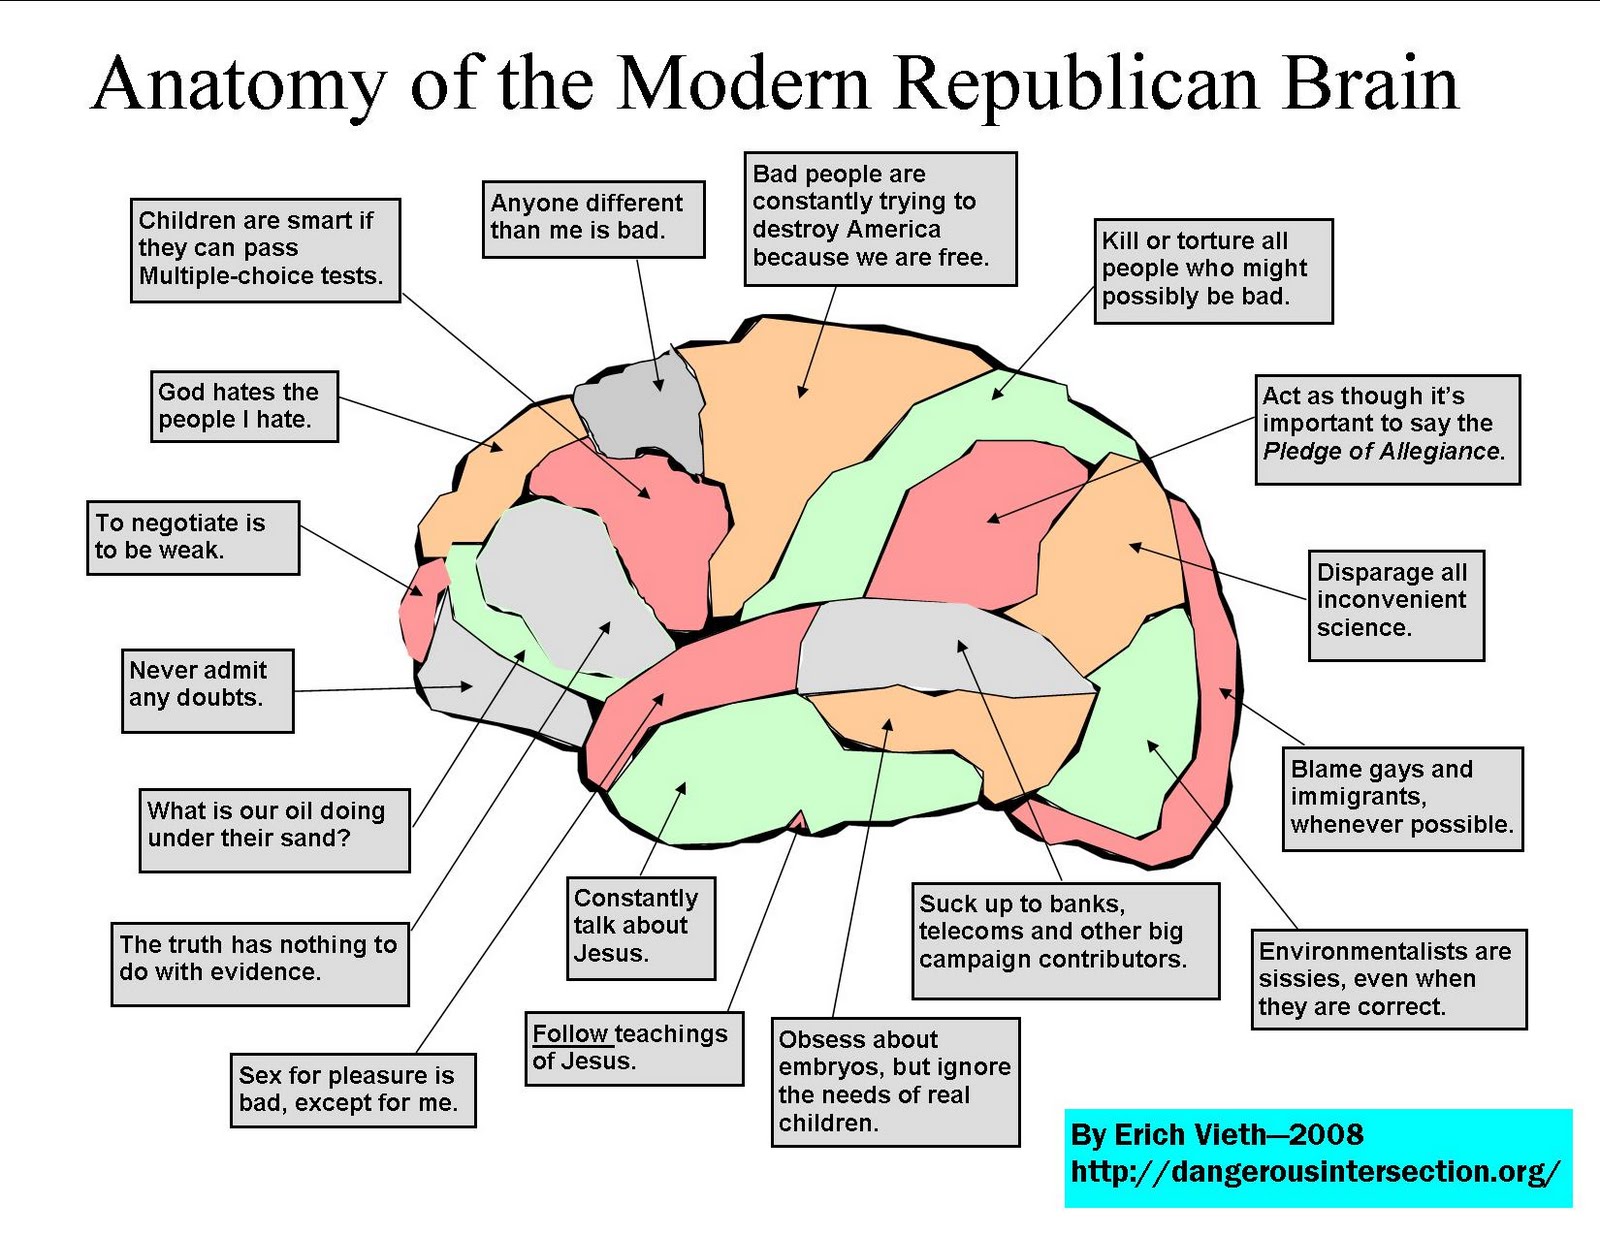 [republican-brain-lo-res.jpg]